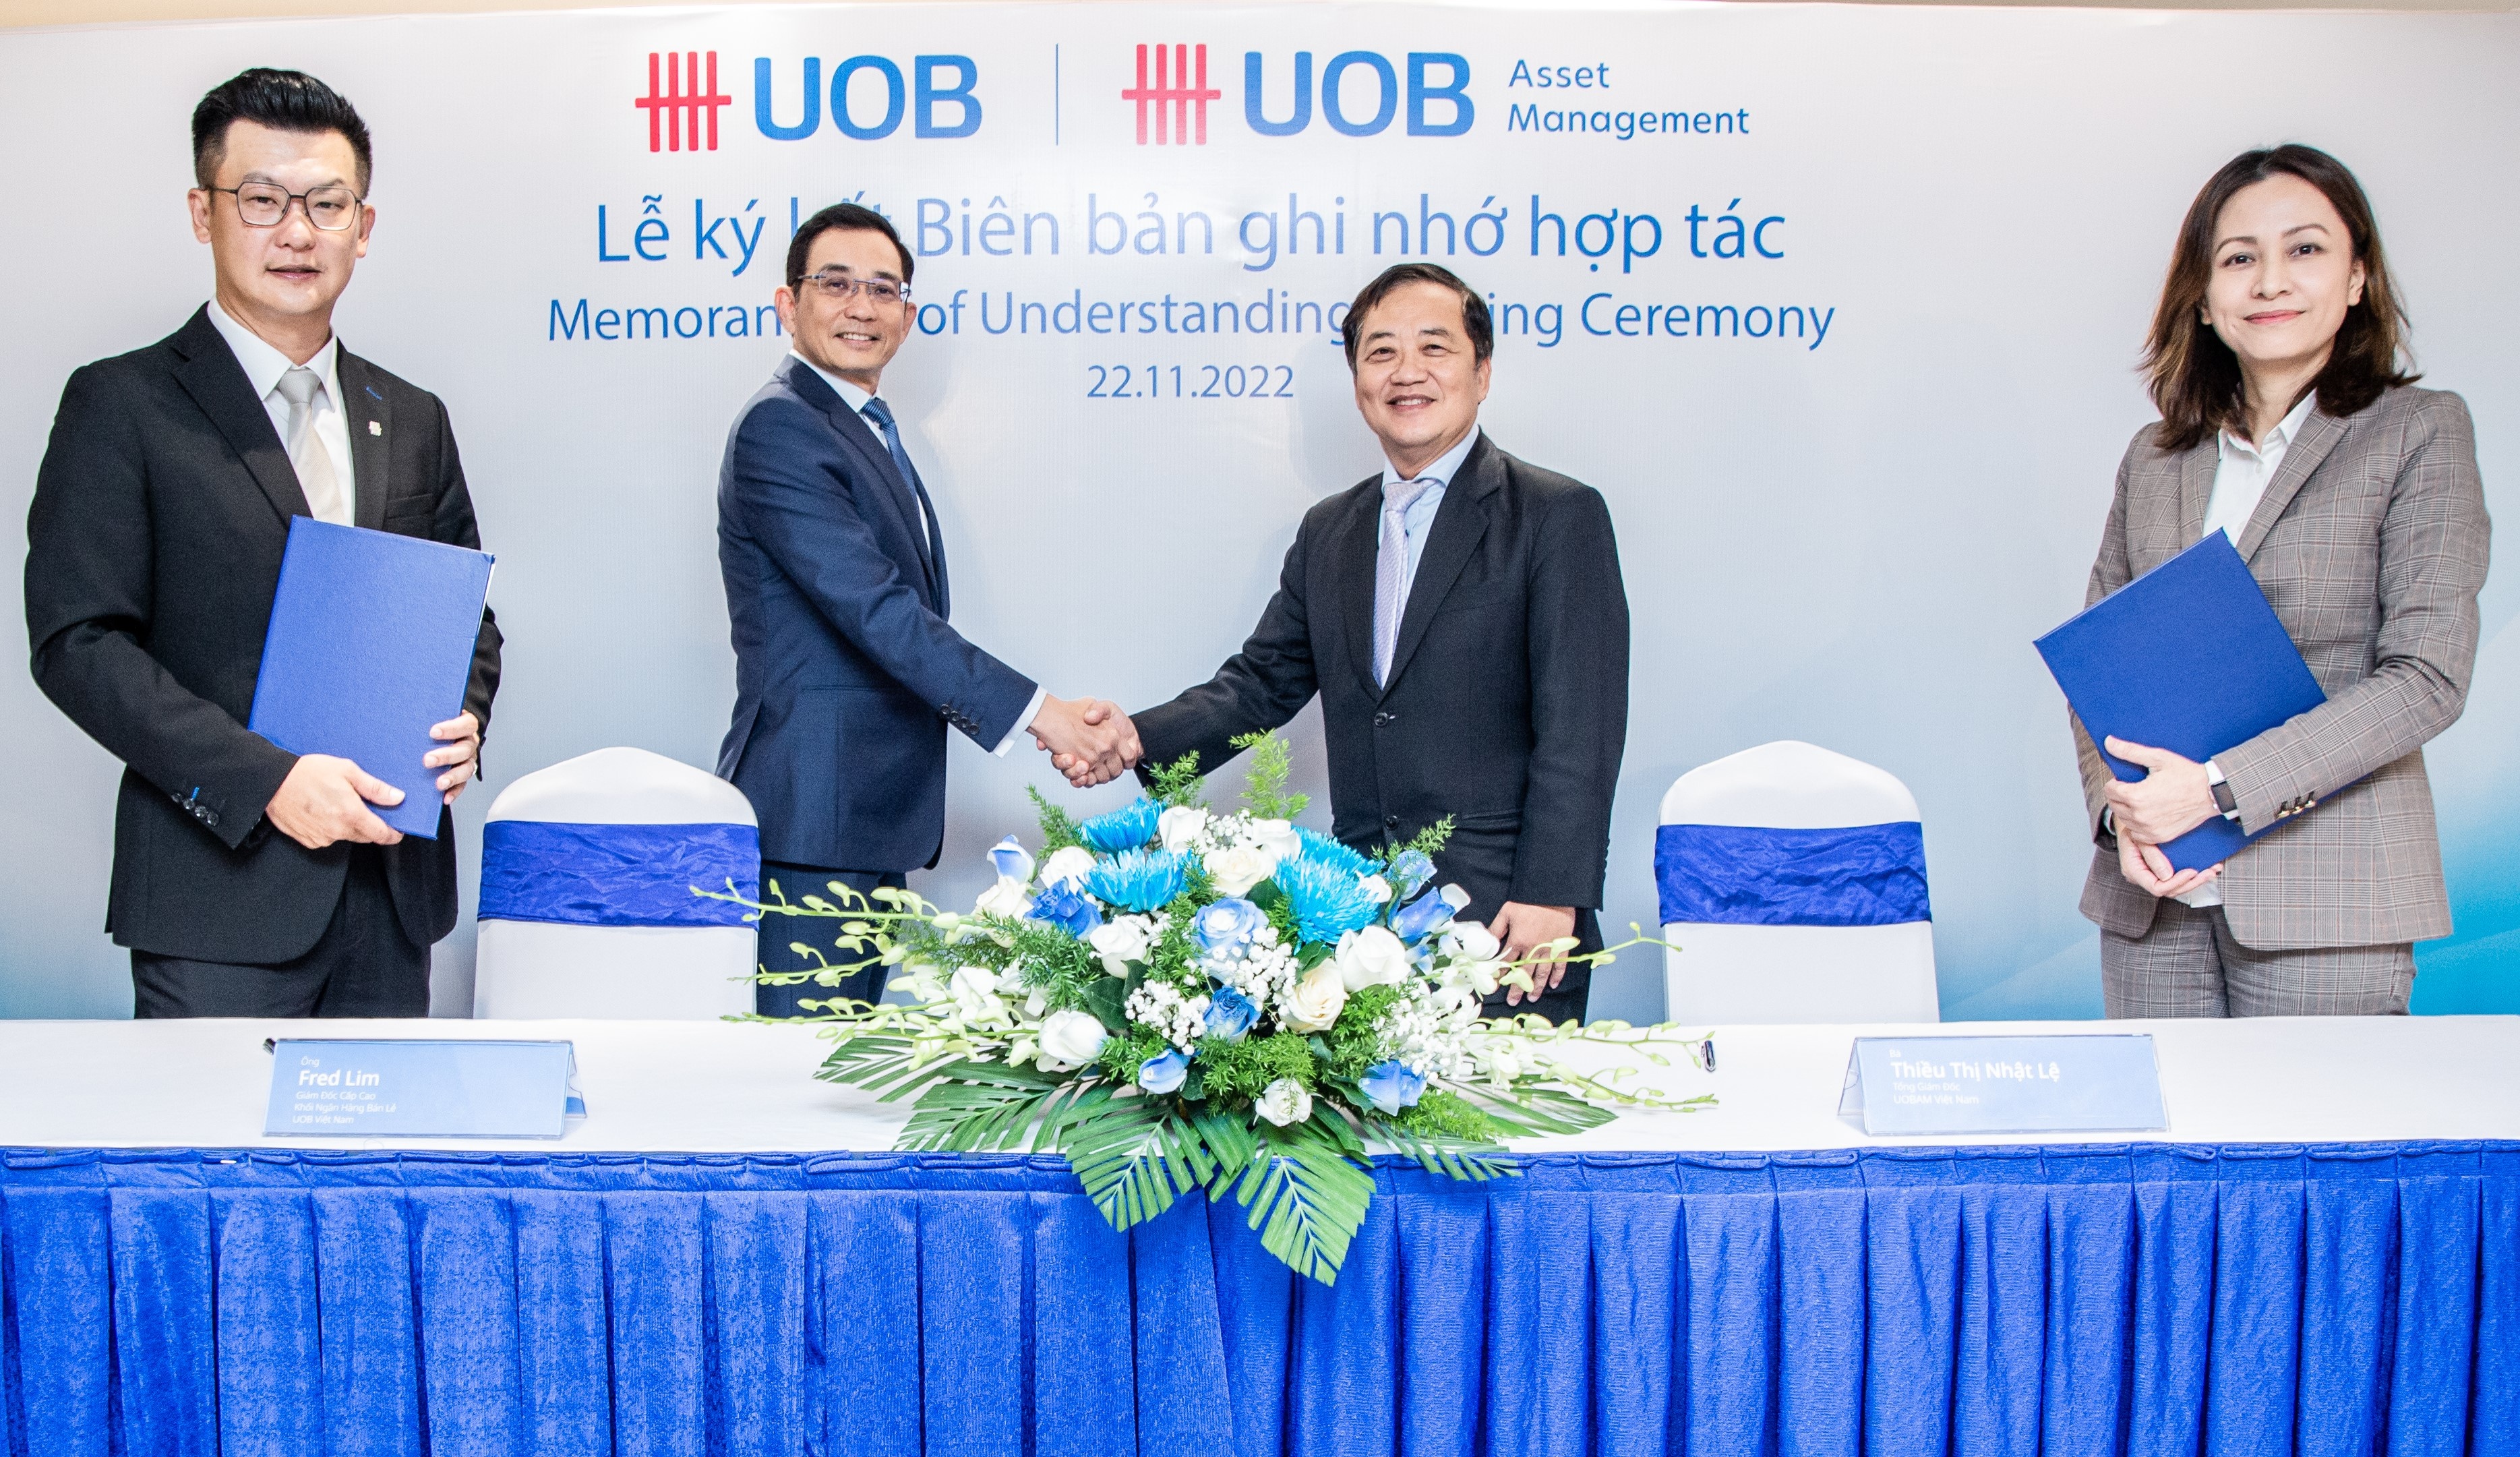 Ngân hàng và Quỹ đầu tư của UOB bắt tay triển khai sản phẩm đầu tư